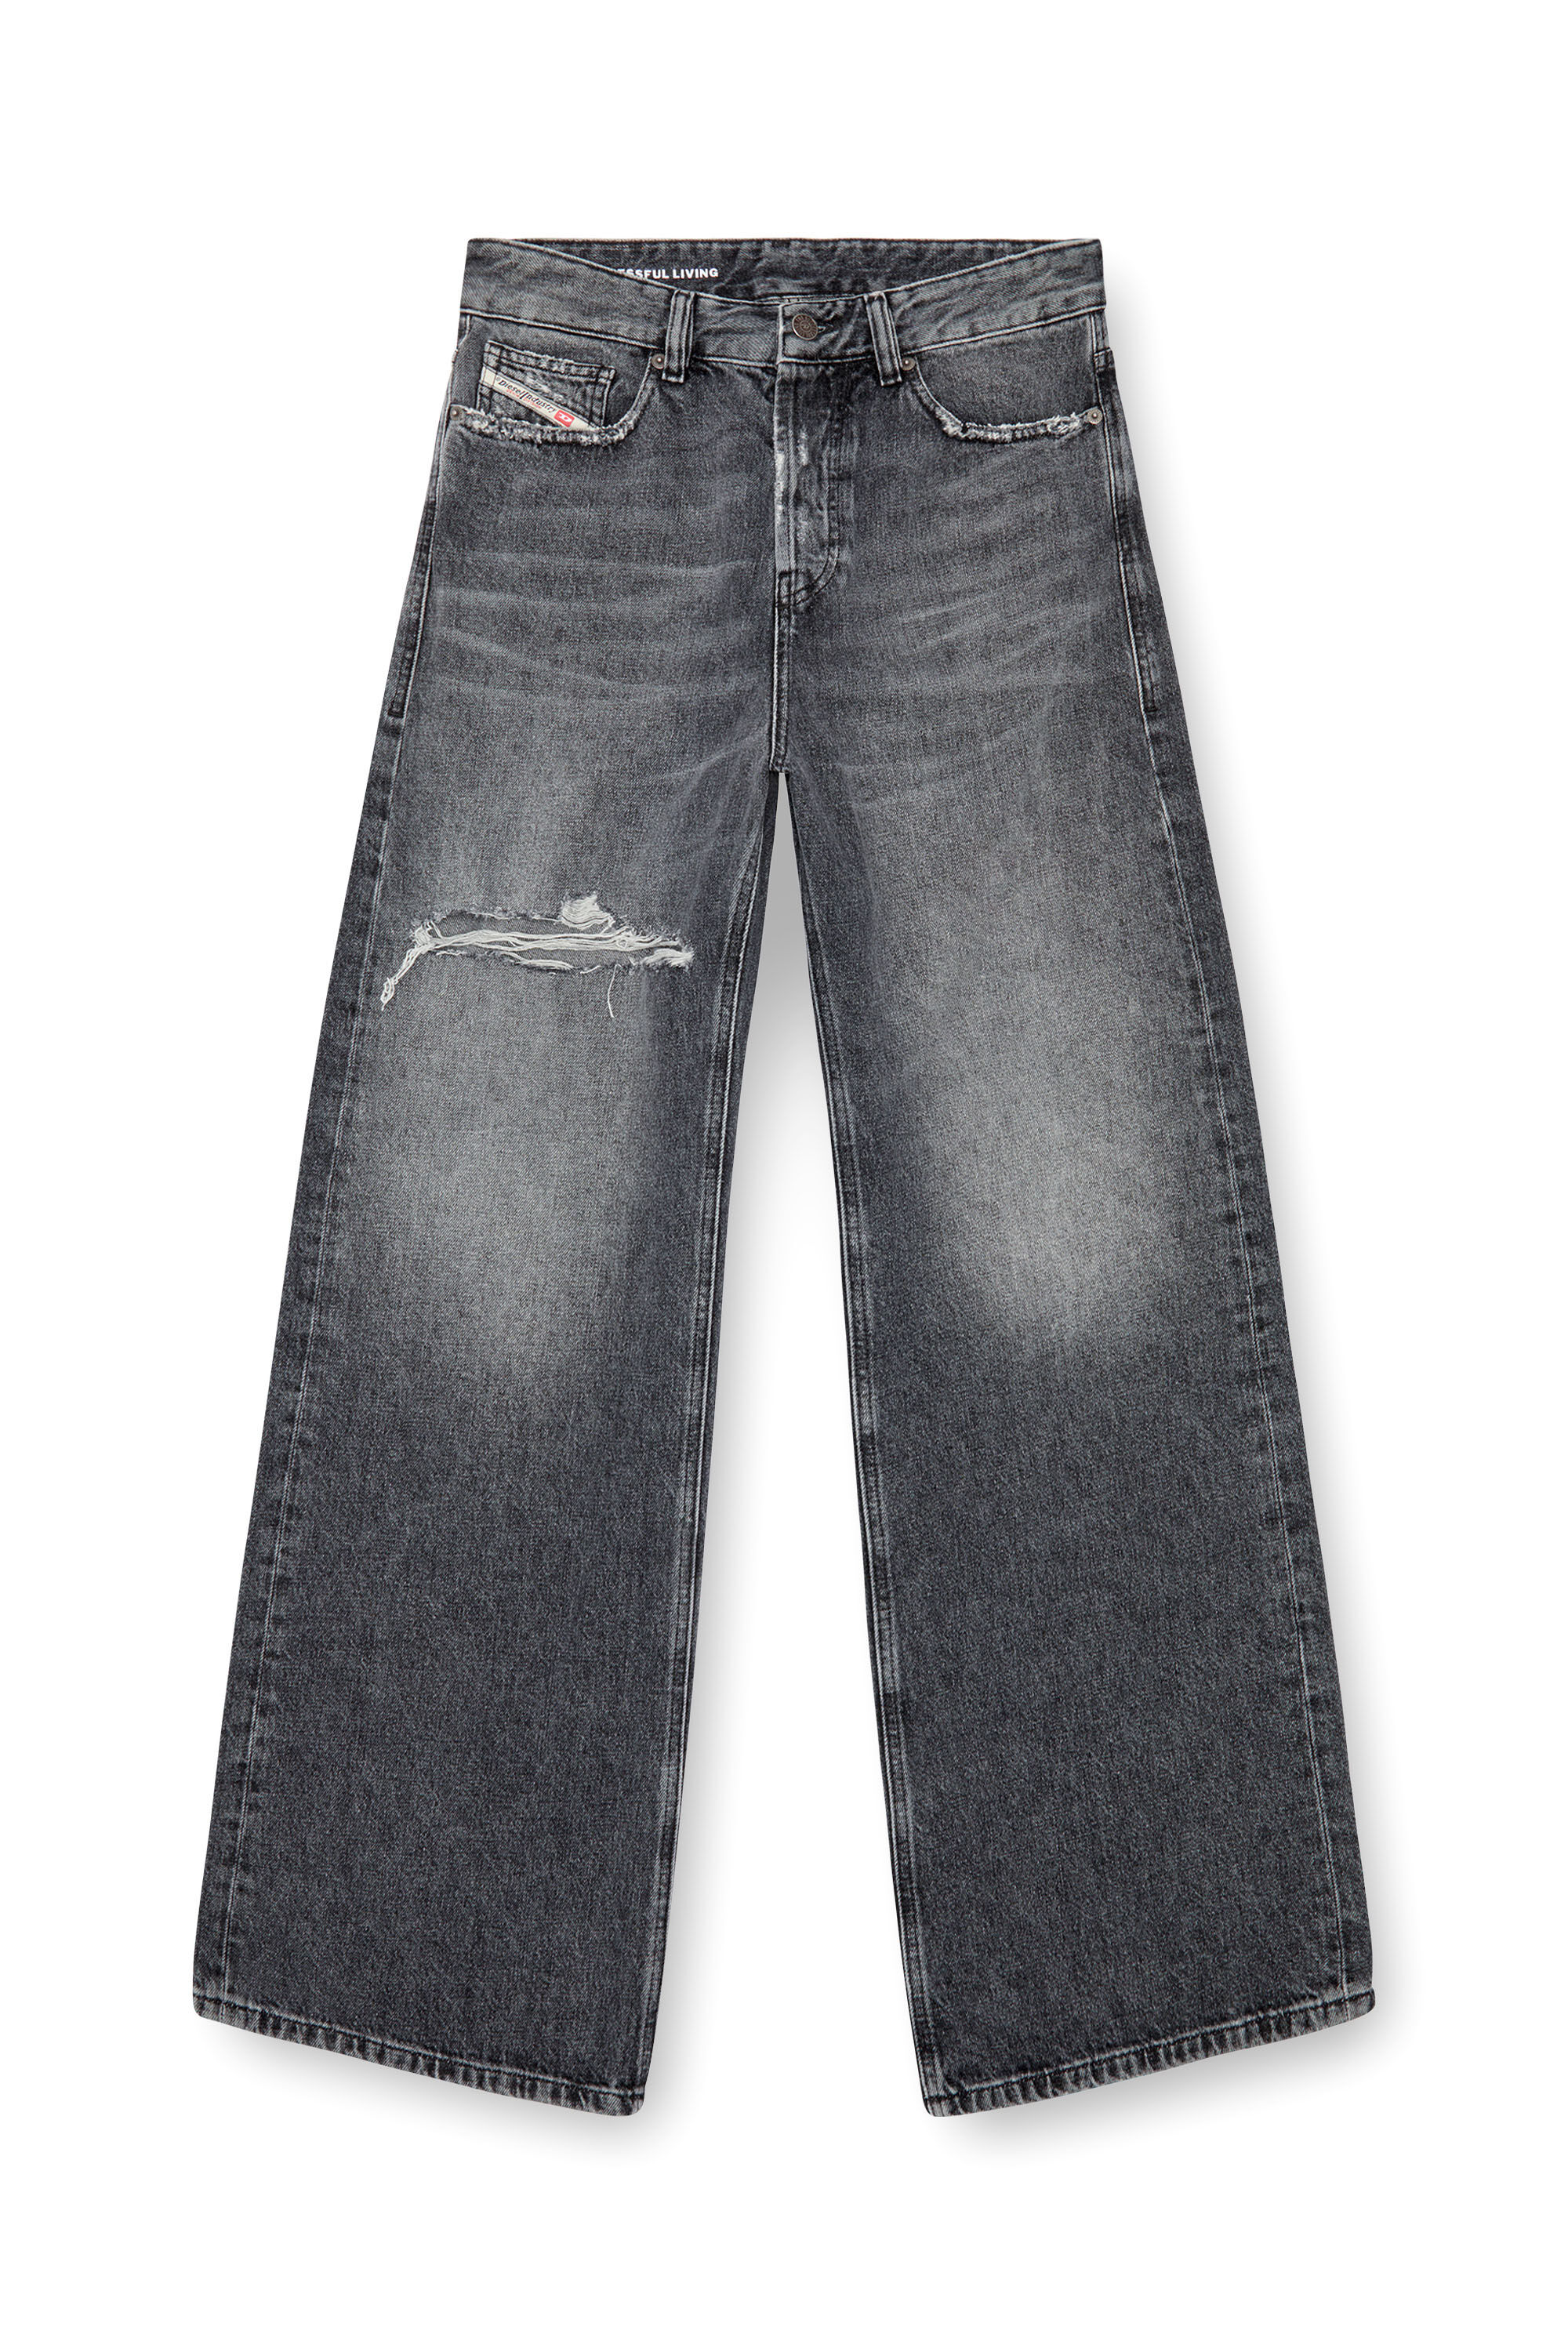 Diesel - Donna Straight Jeans 1996 D-Sire 007X4, Nero/Grigio scuro - Image 2